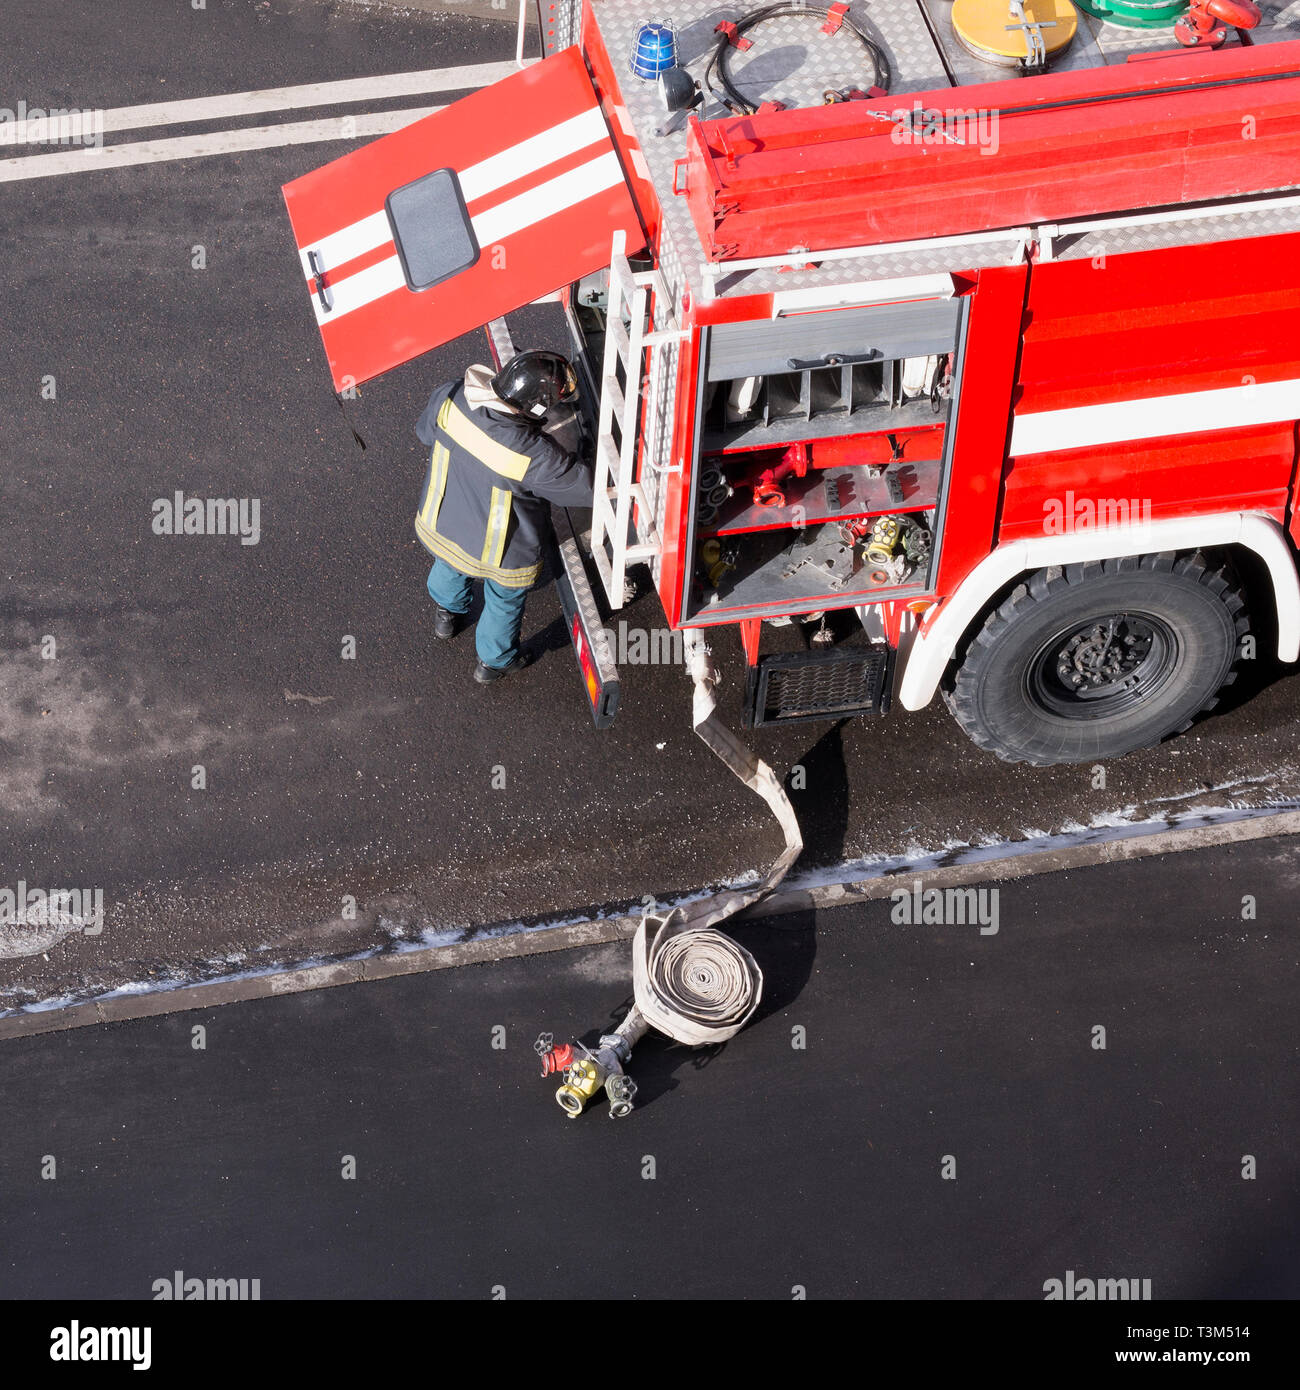 Camion rouge est arrivé sur un appel d'urgence. High angle view. Image carré Banque D'Images